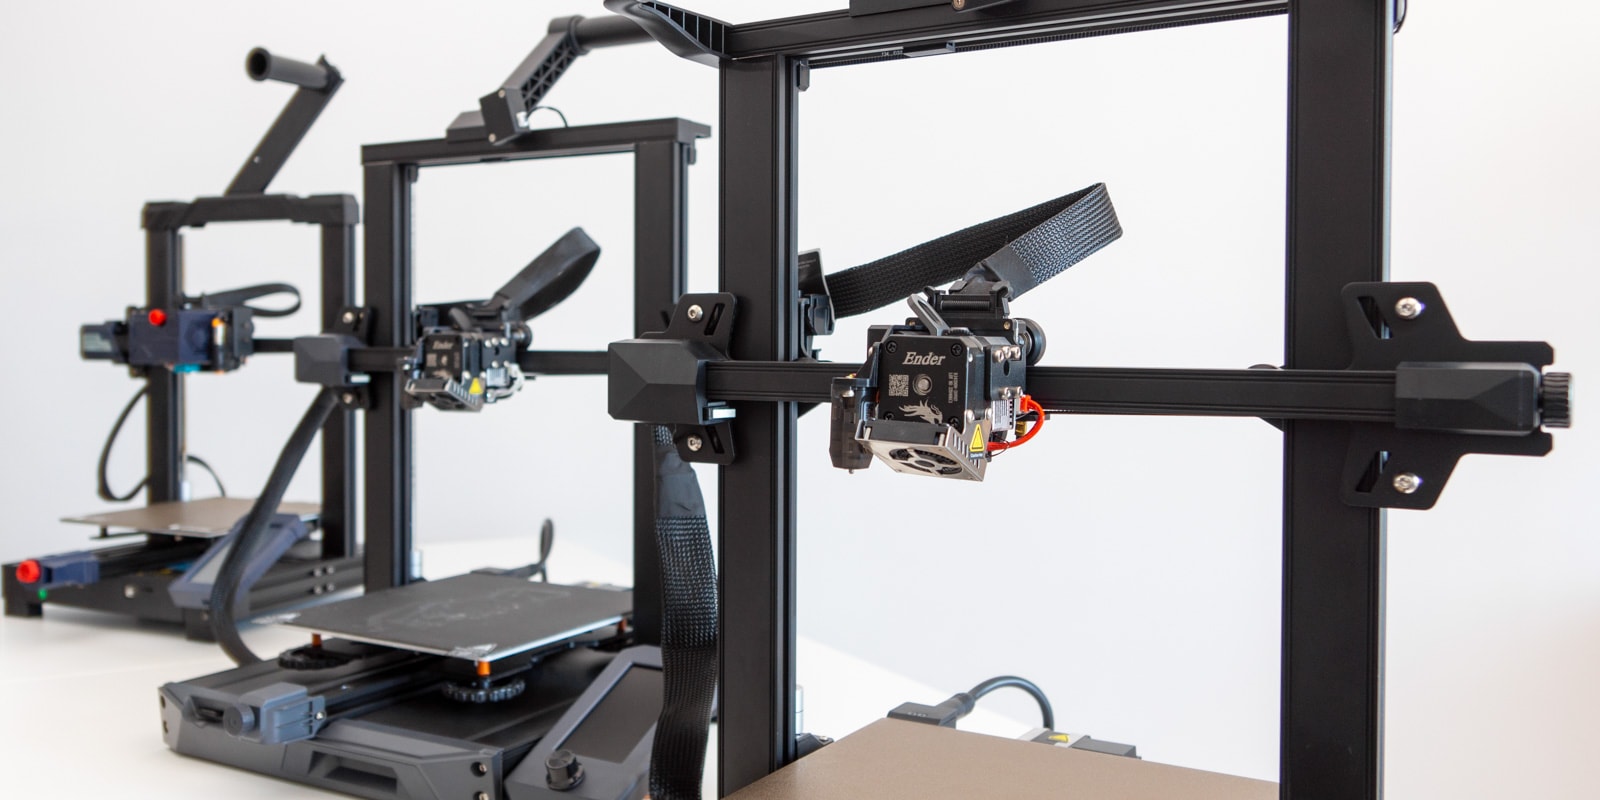 Maggiori informazioni su "Le migliori stampanti 3D sotto i € 500 - Guida all'acquisto"